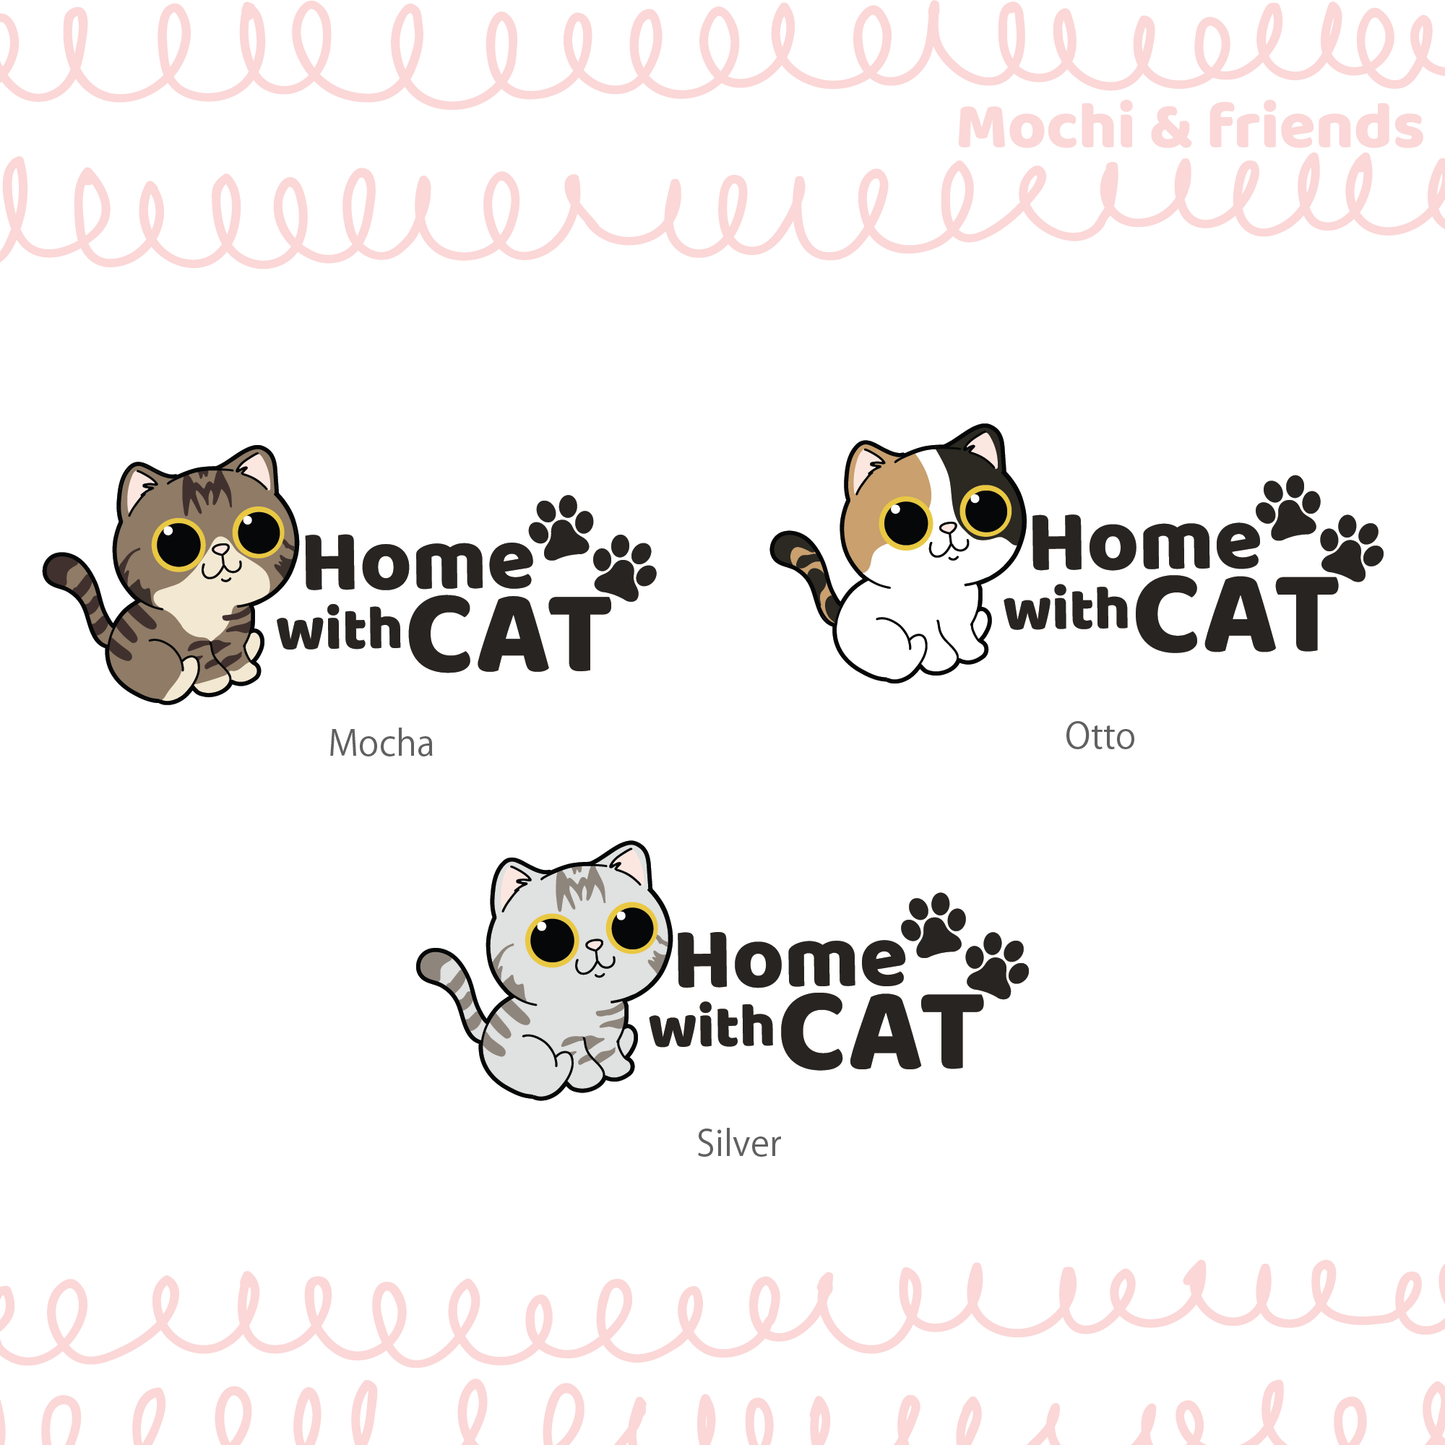 Mochi & friends 貓貓掛牌 Home with cat door sign